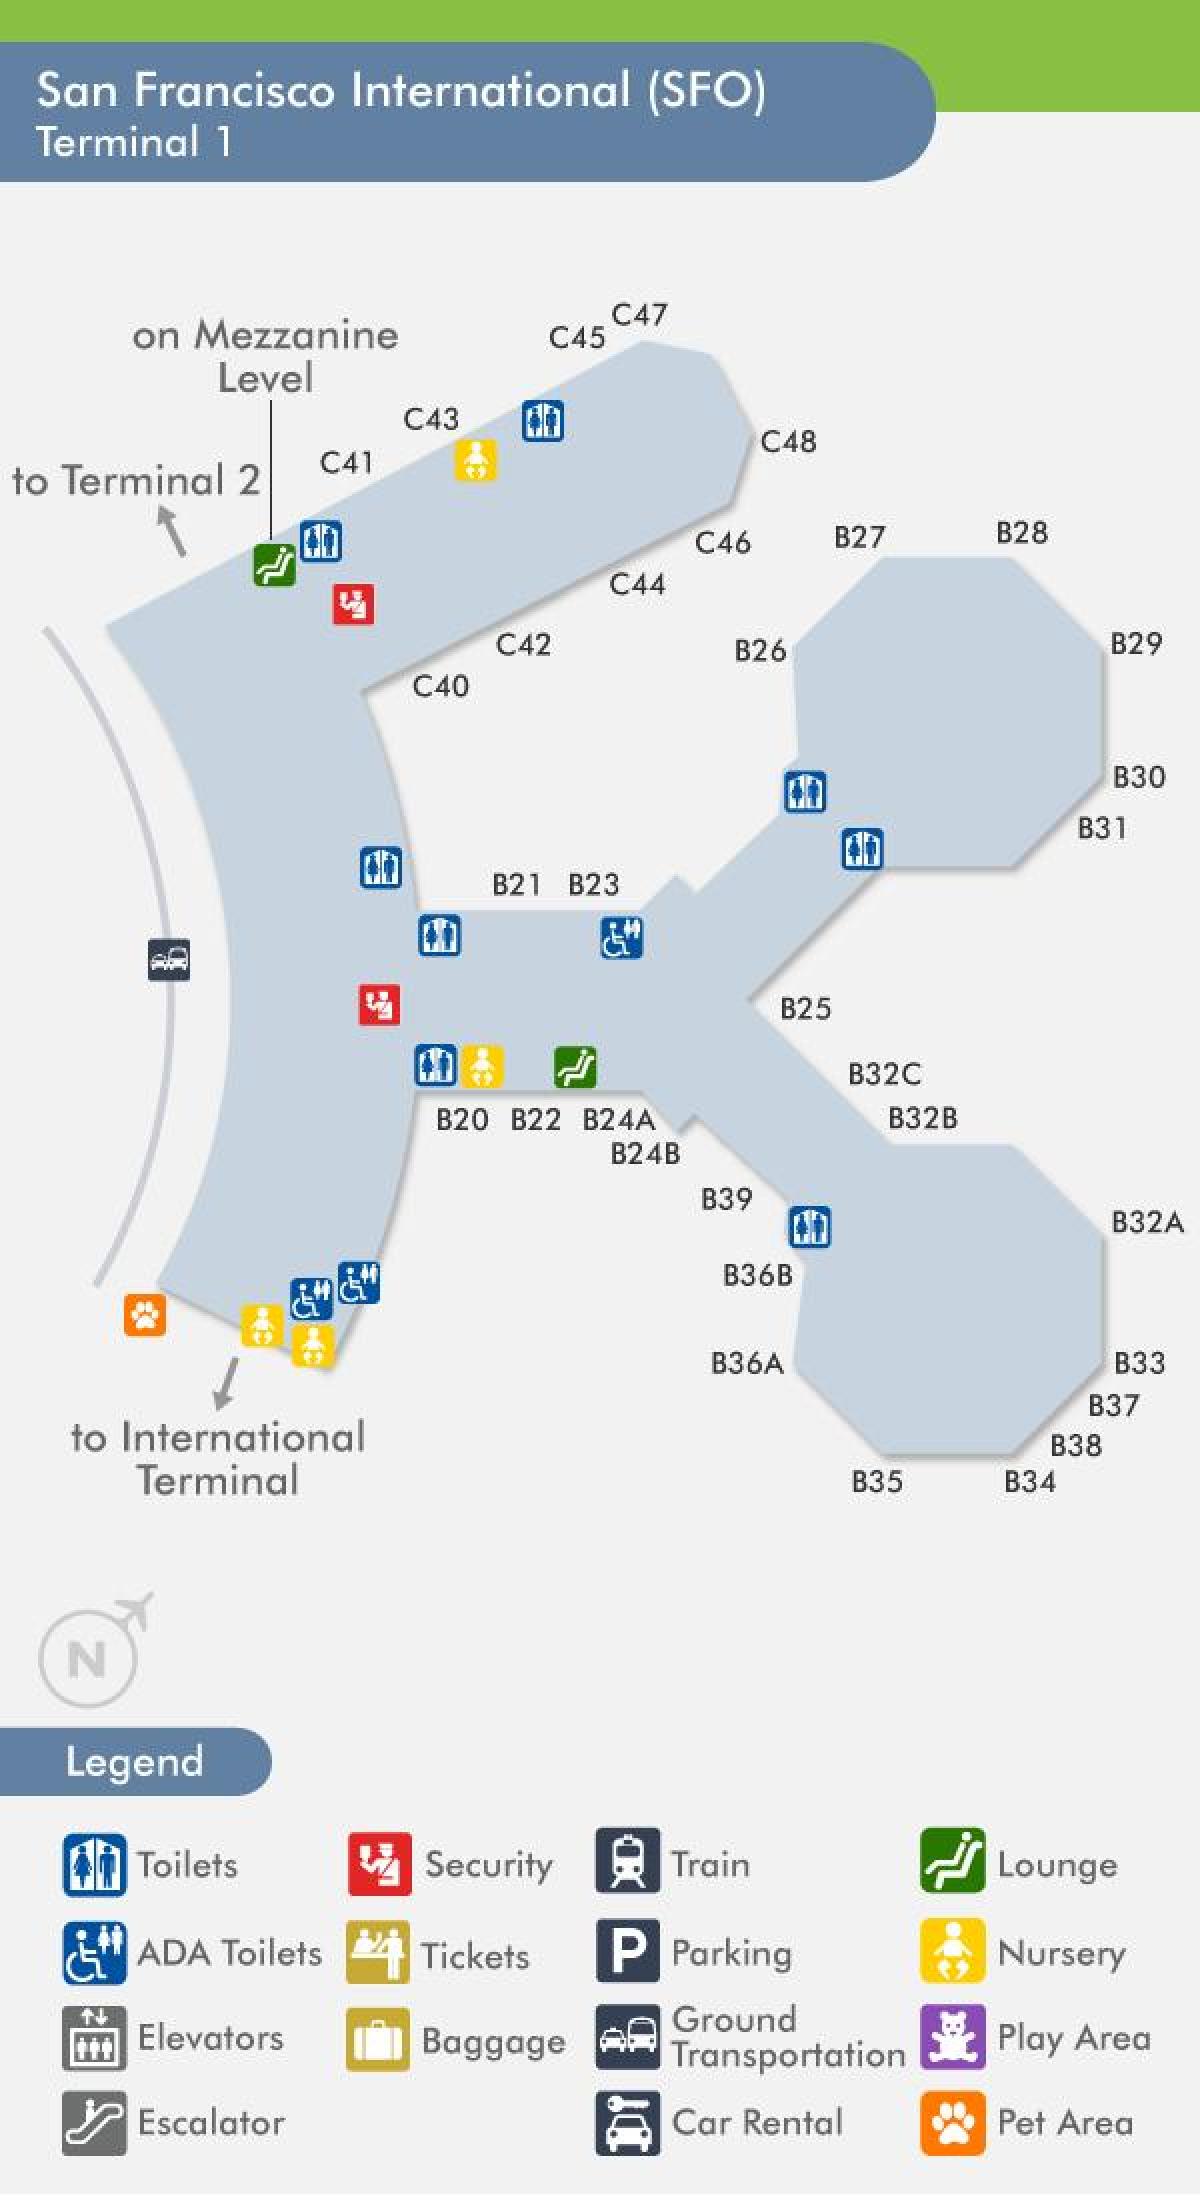 सैन फ्रांसिस्को हवाई अड्डे के टर्मिनल 1 नक्शा